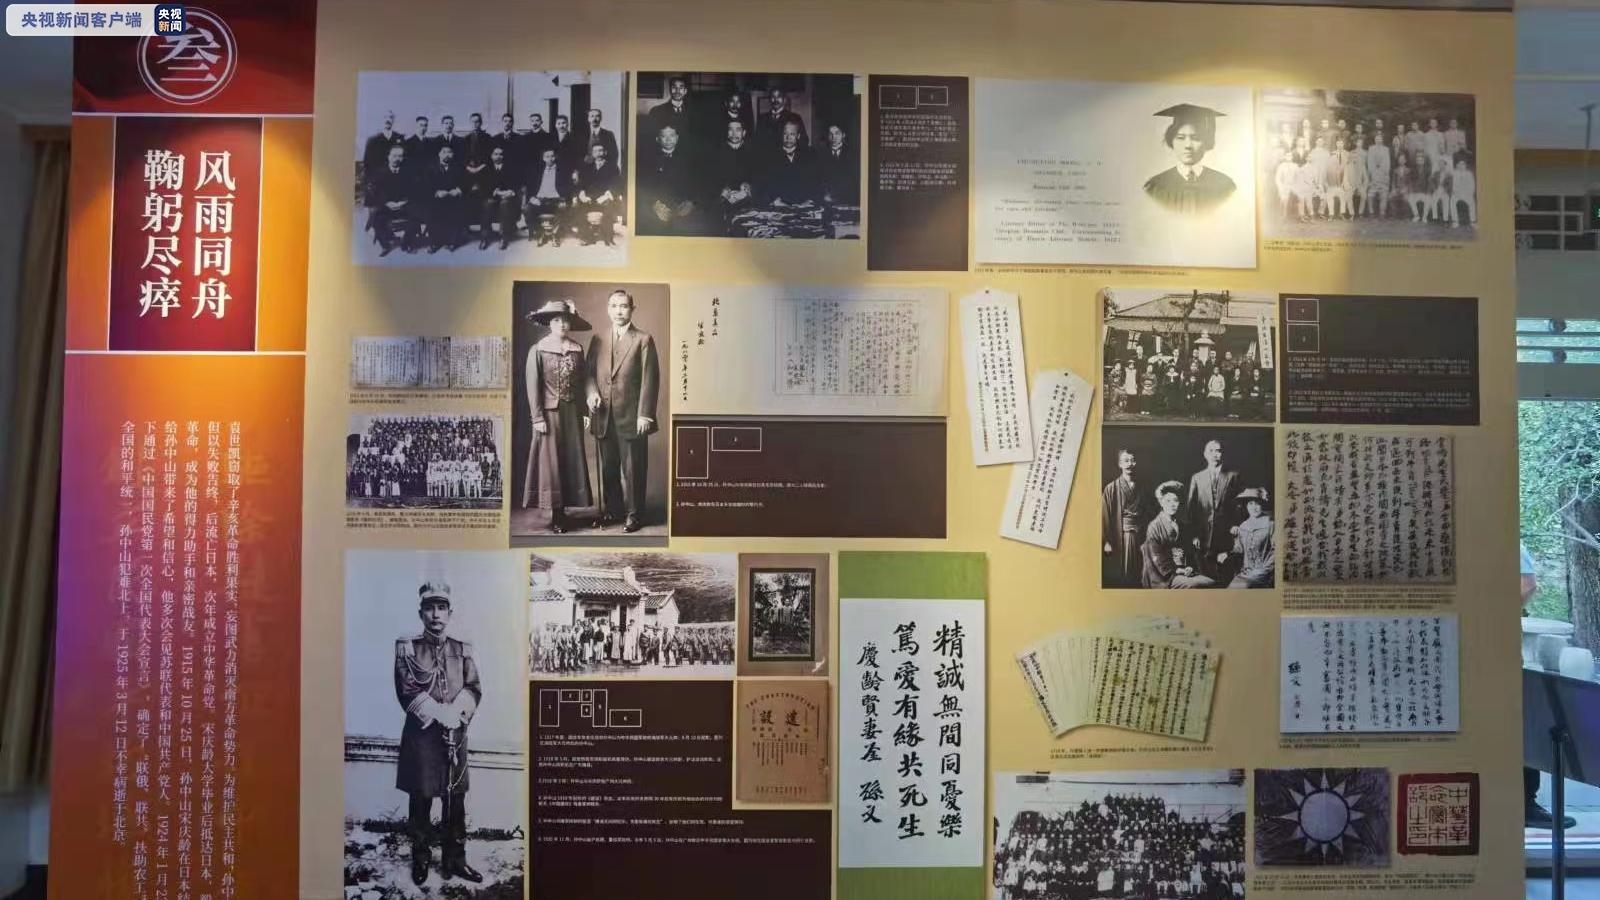 珍贵文物首次展出《孙中山宋庆龄与辛亥革命》文物图片展在京开幕